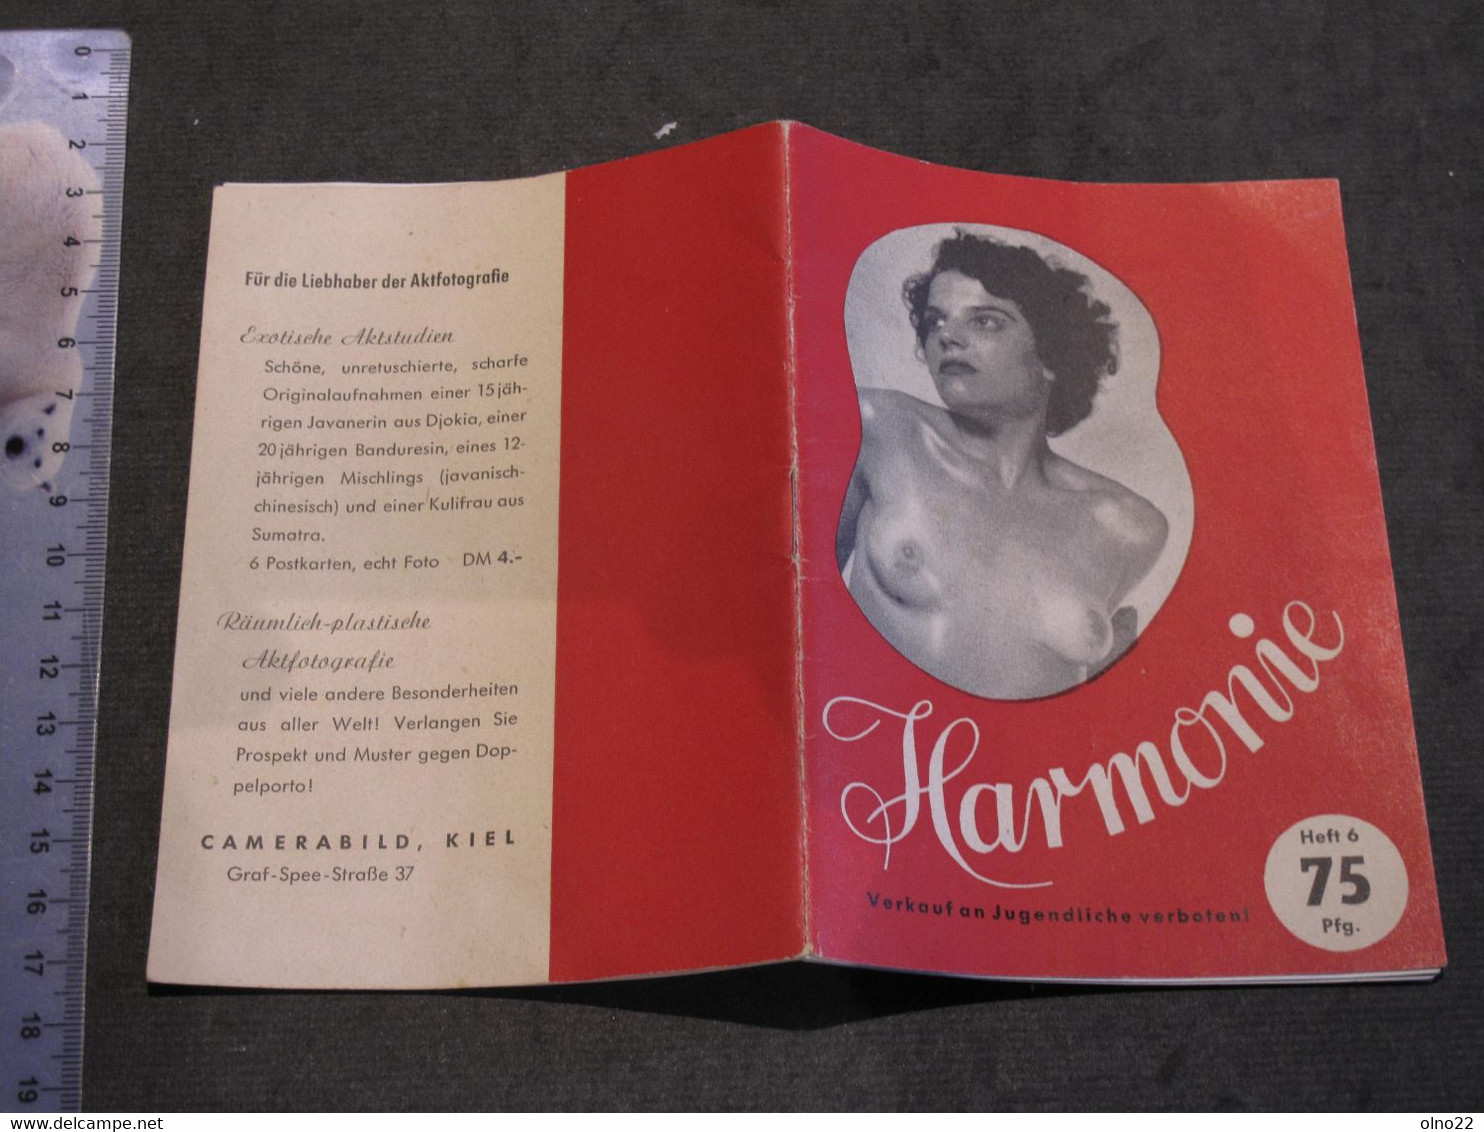 HARMONIE - CAMERA BIELD KIEL - PETIT RECUEIL DE 15 PHOTOS N/B DE NUS FEMININS EDITION ALLEMANDE - CIRCA ANNEES 50 - Fotografie